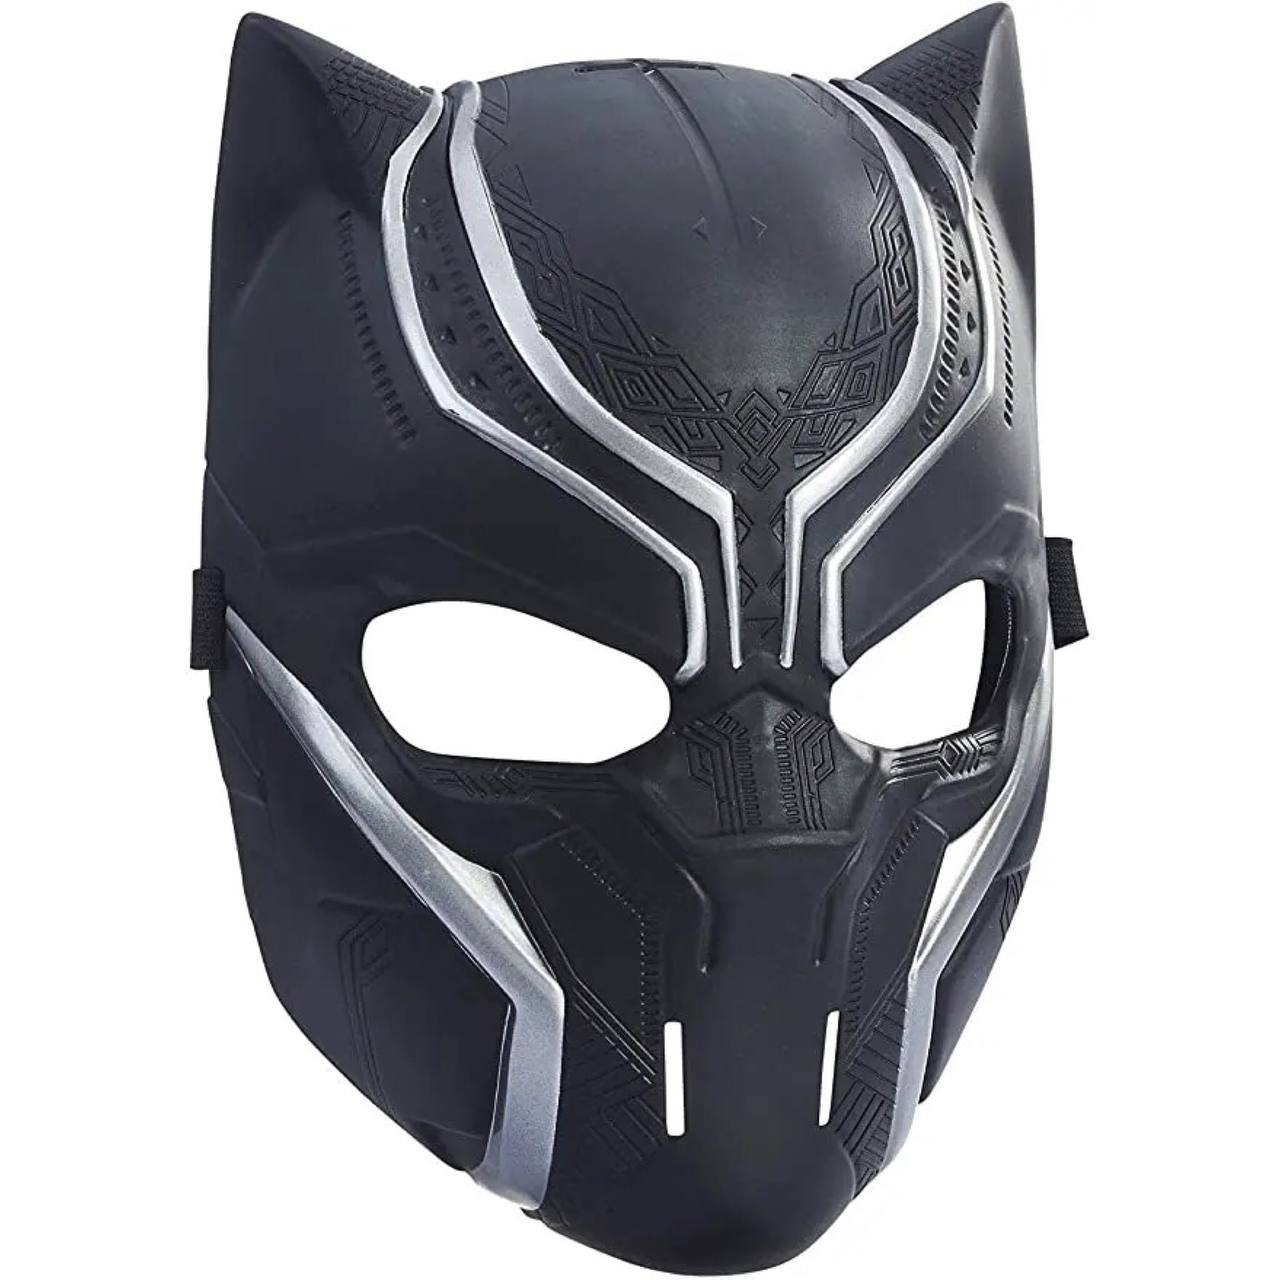 ماسک بلک پانتر (پلنگ سیاه) رنگ مشکی جنس محصول پلاستیک سخت کیفیت عالی مناسب برای کودکان و نوجوانان ویزلی لند